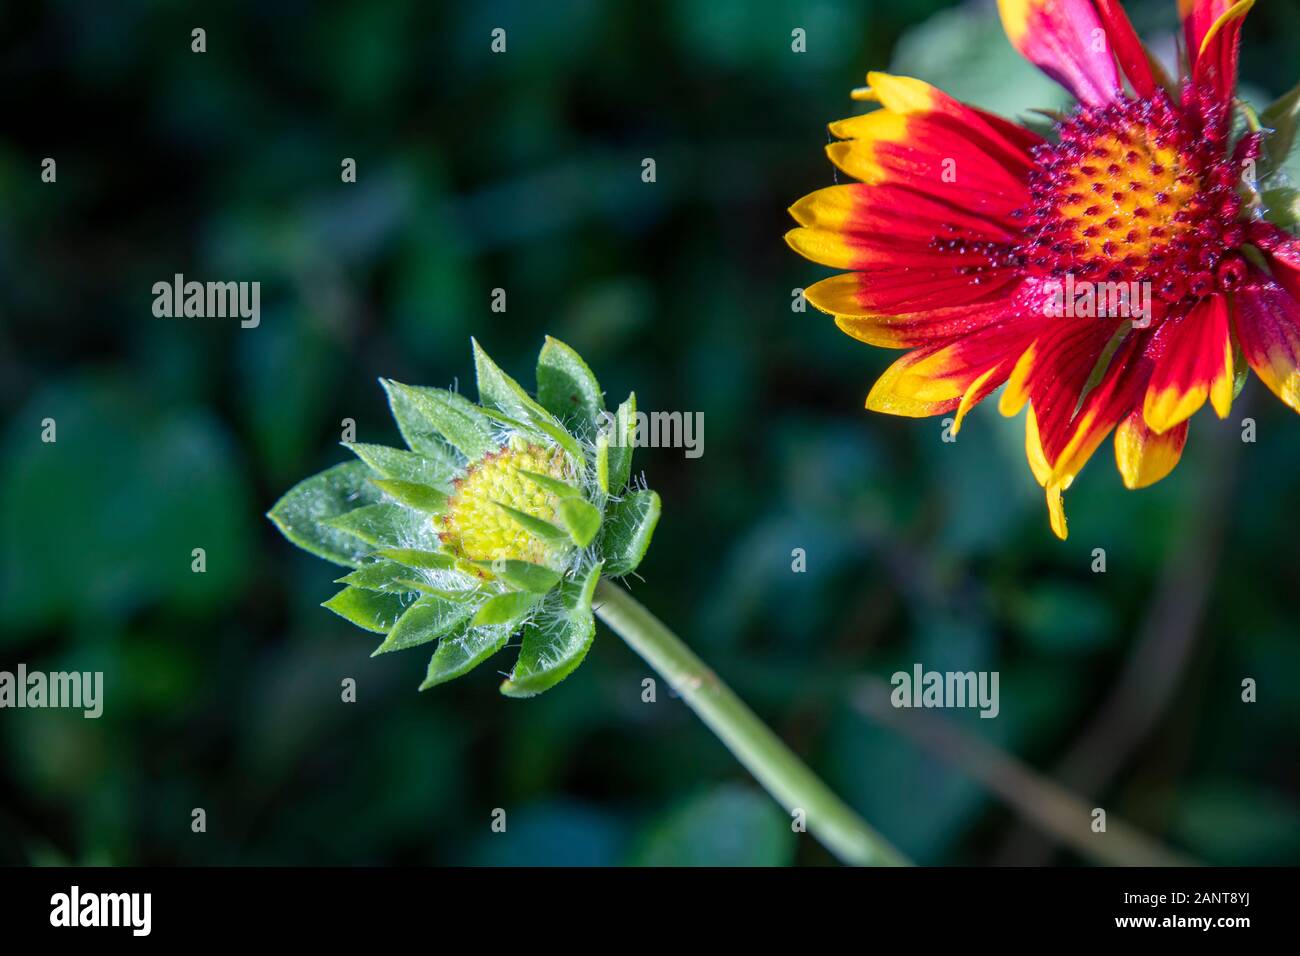 Gaillardia pulchella Indischen decke Blume und Bud in der Nähe auf einem unscharfen Hintergrund Stockfoto